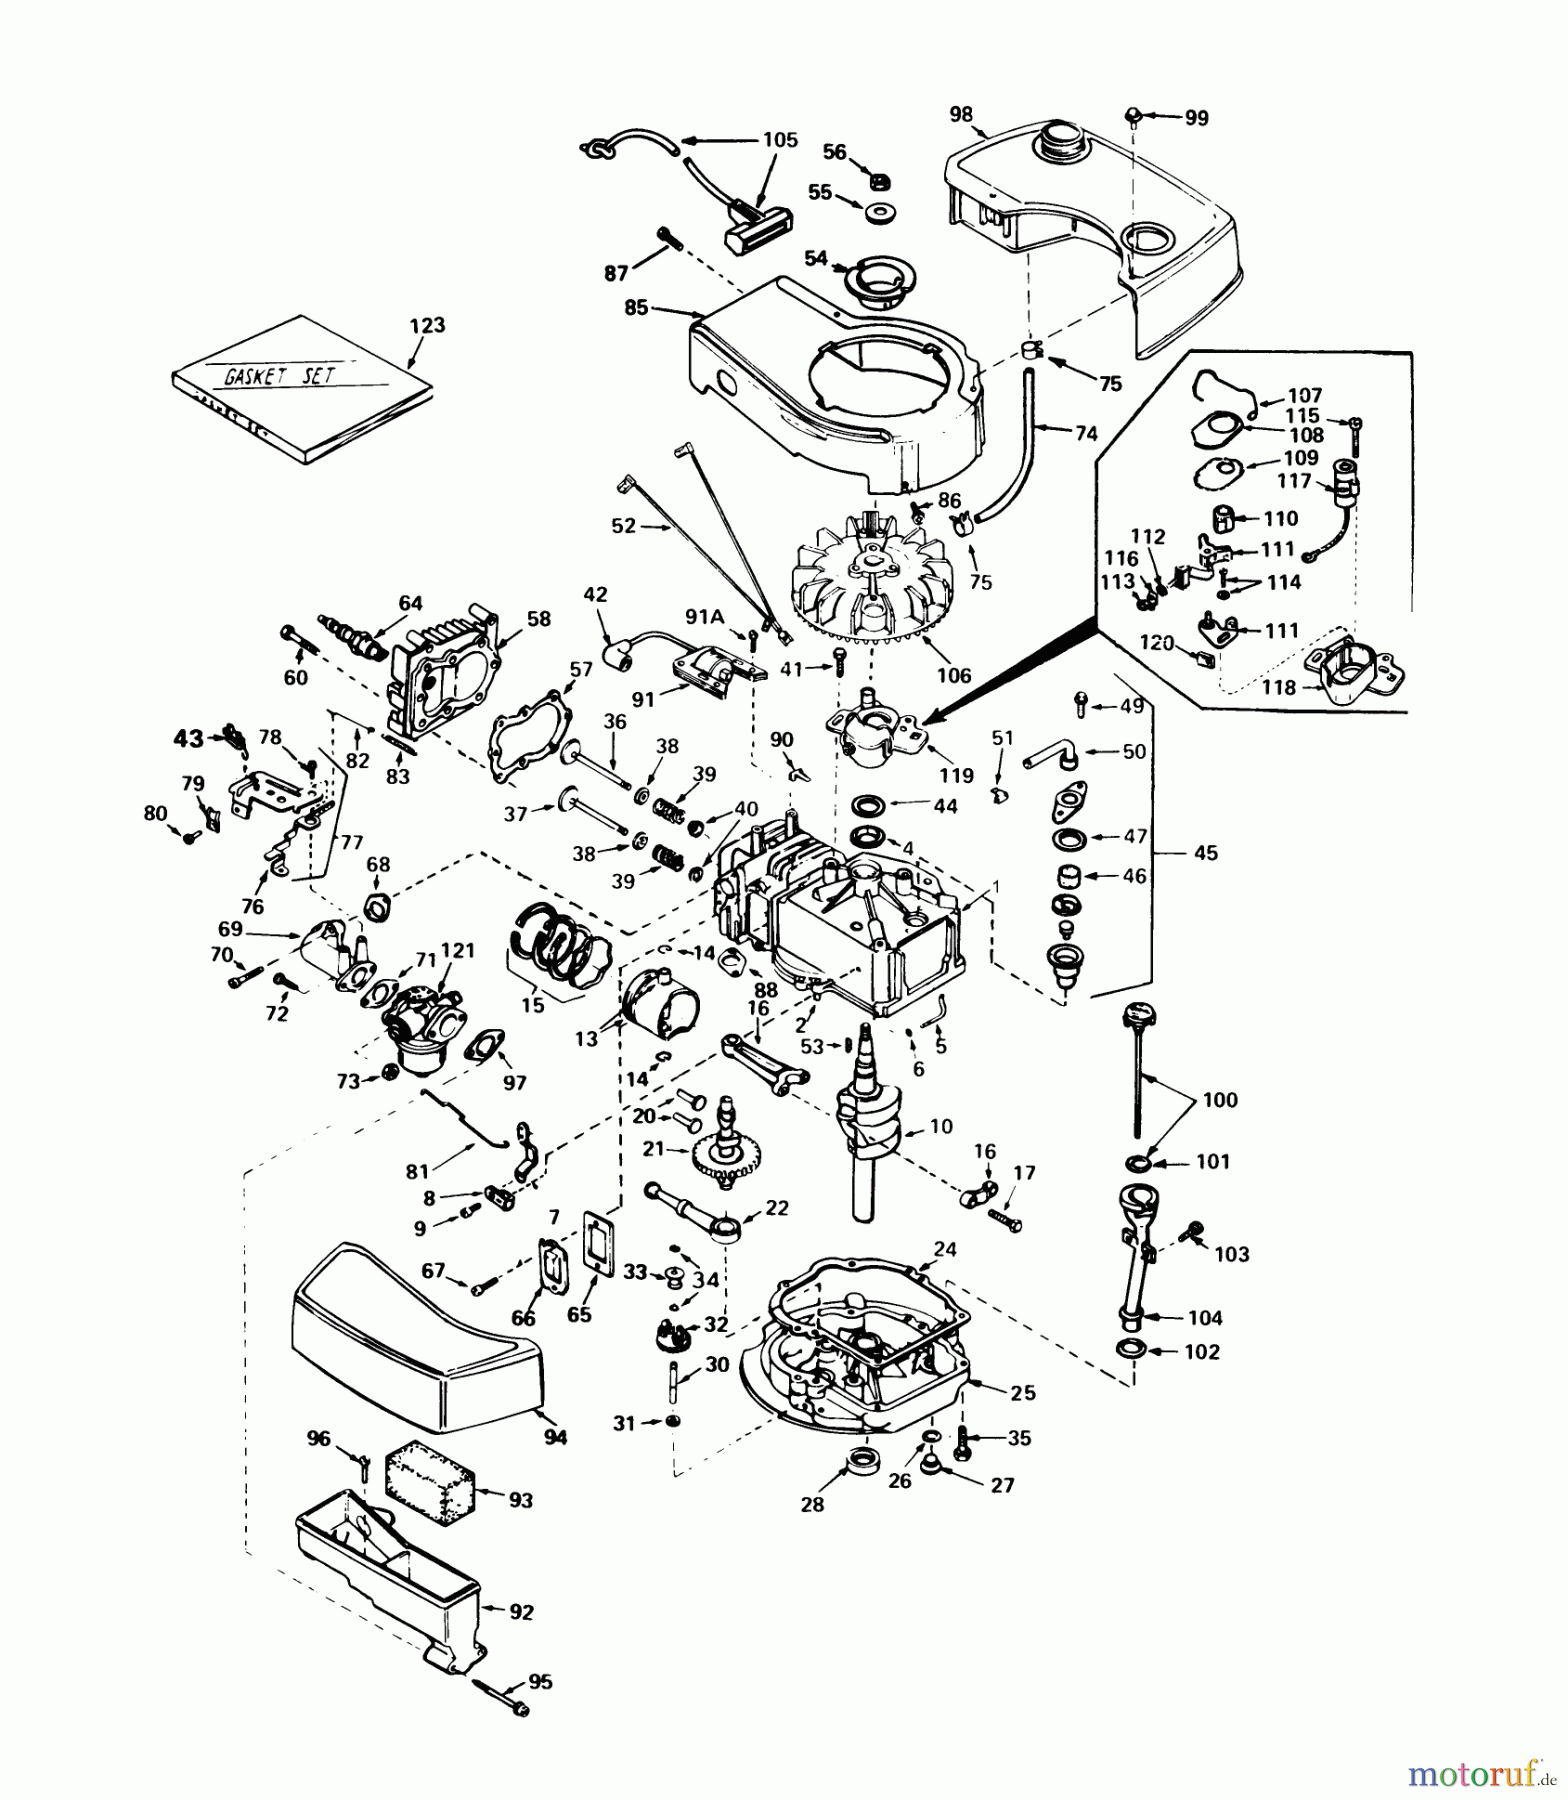  Toro Neu Mowers, Walk-Behind Seite 1 20790 - Toro Lawnmower, 1980 (0000001-0999999) ENGINE TECUMSEH MODEL NO. TNT 100-10061C